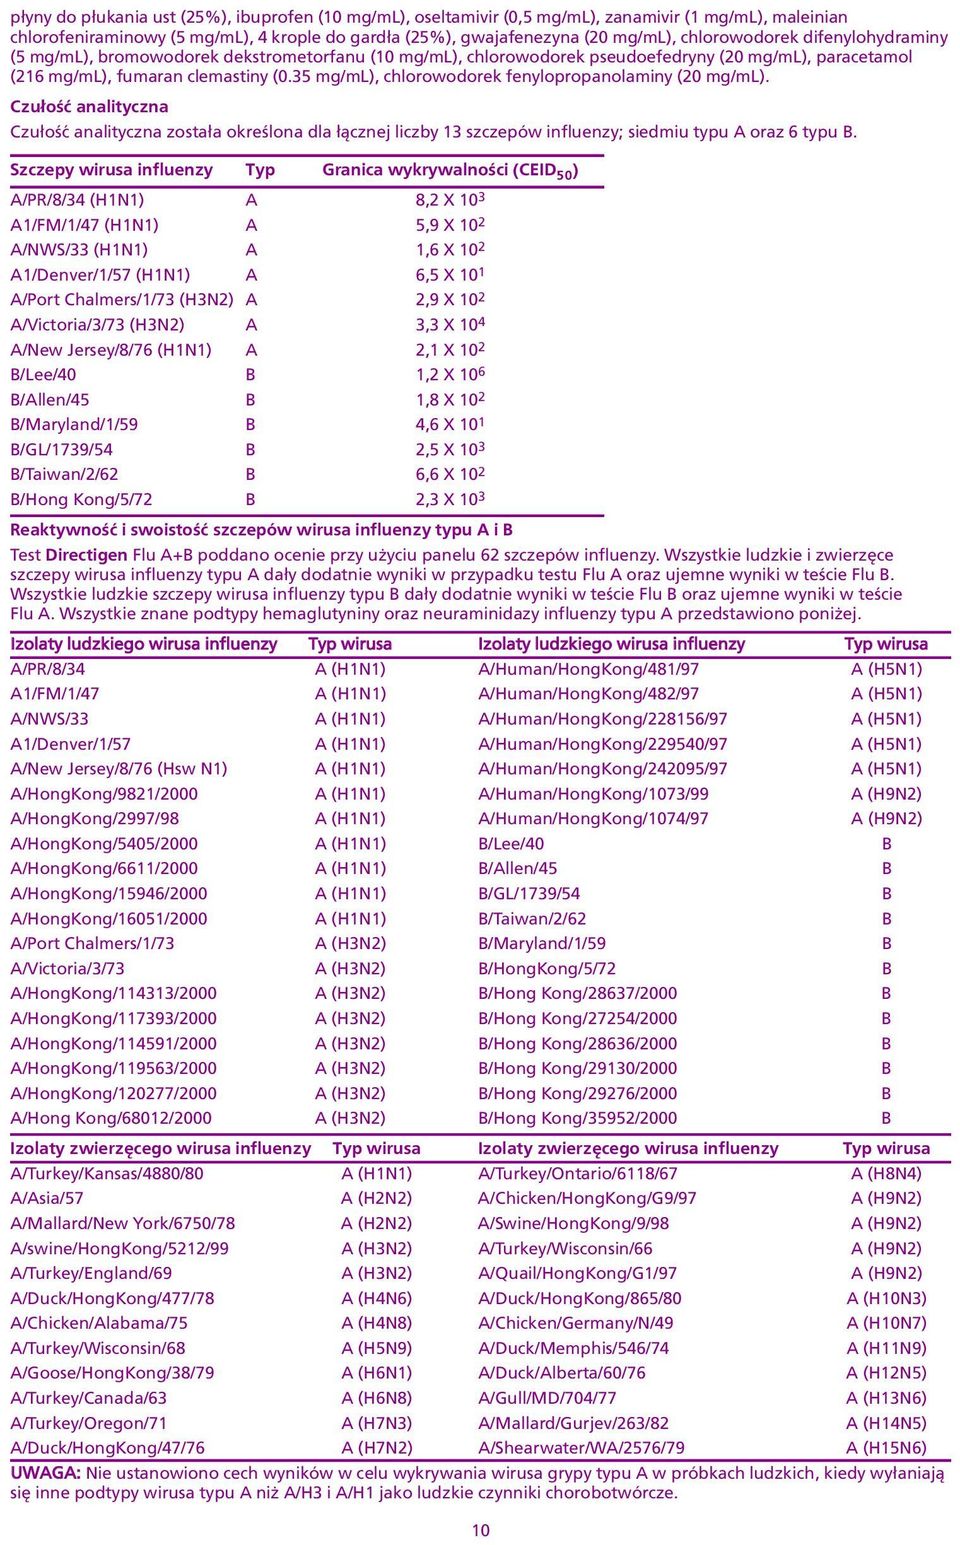 fenylopropanolaminy (20 mg/ml) Czu³oœæ analityczna Czu³oœæ analityczna zosta³a okreœlona dla ³¹cznej liczby 13 szczepów influenzy; siedmiu typu oraz 6 typu Szczepy wirusa influenzy Typ Granica